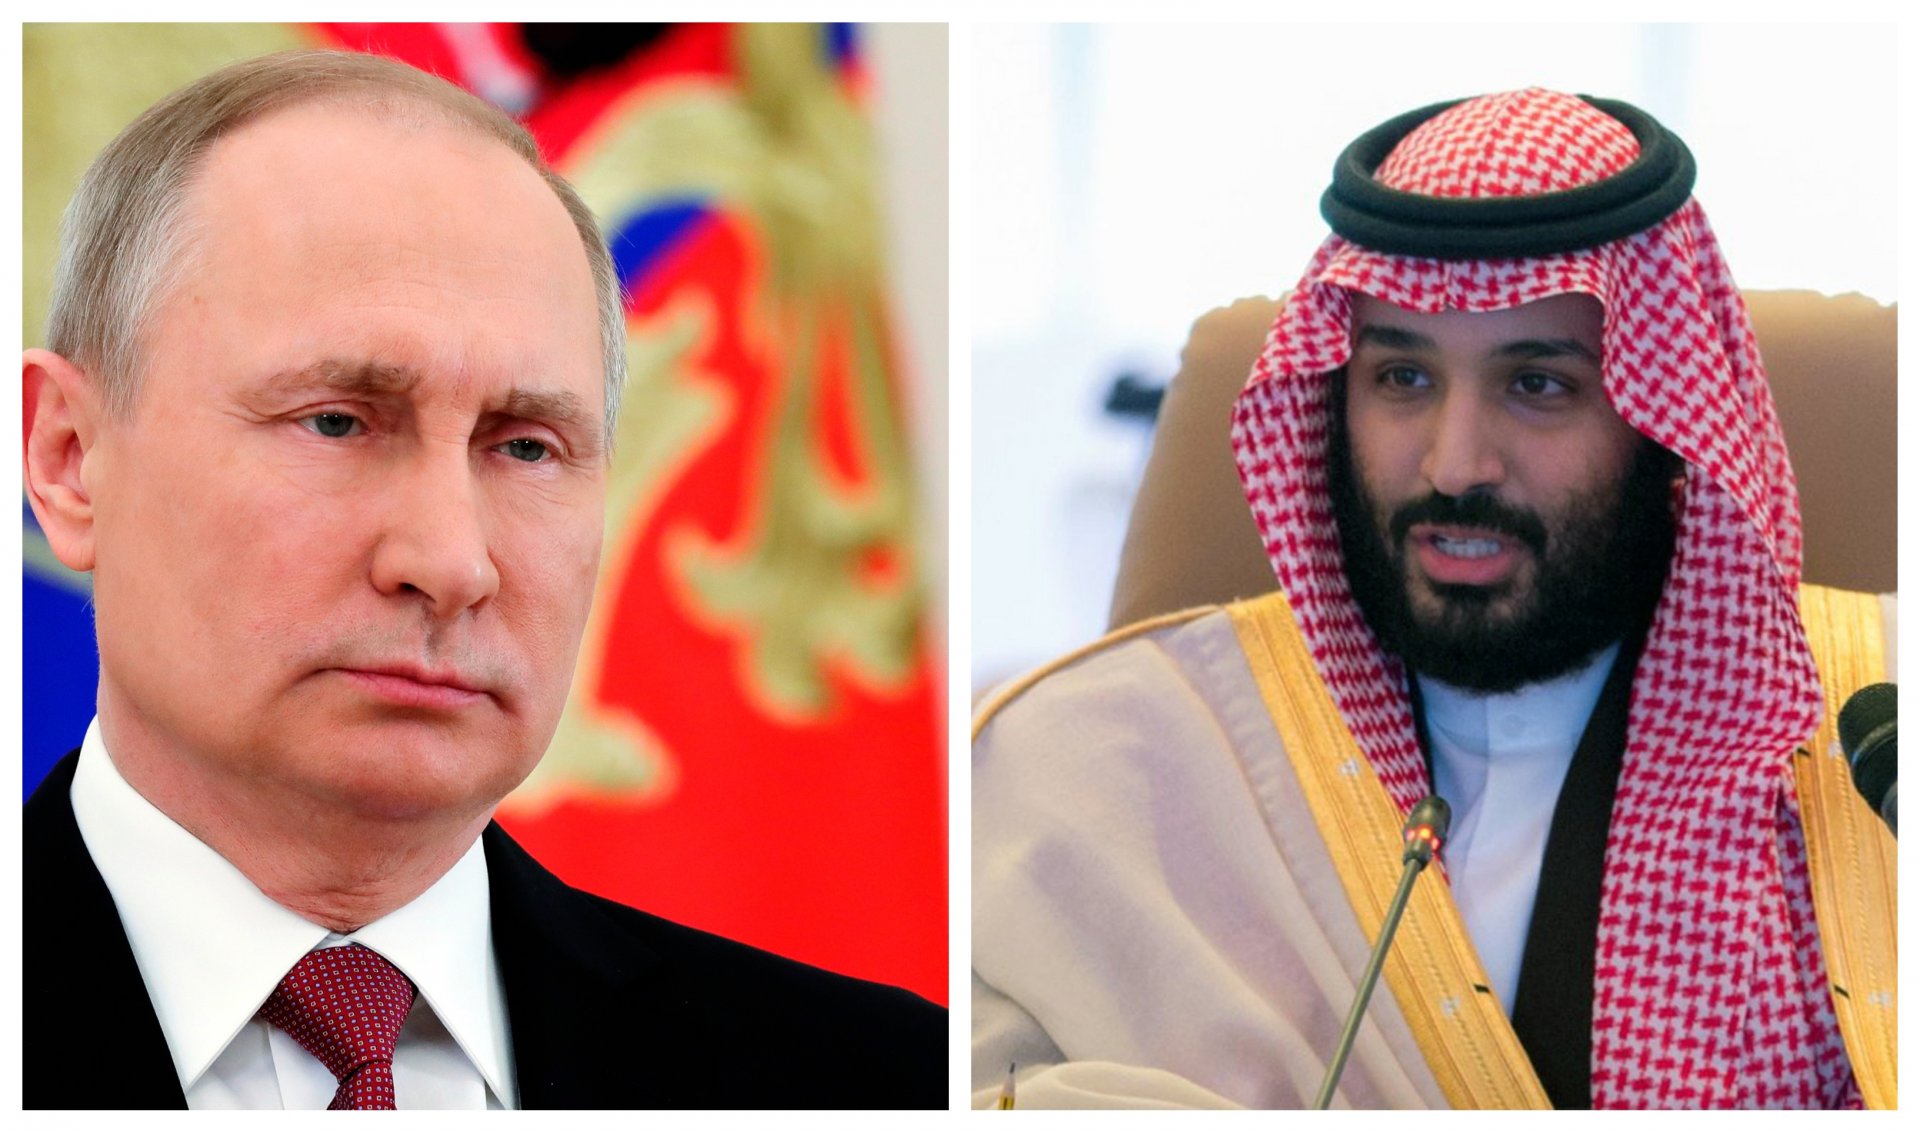 Президентът Владимир Путин и престолонаследникът принц Мохамед бин Салман, който на практика управлява кралството, са разговаряли няколко пъти от началото на войната